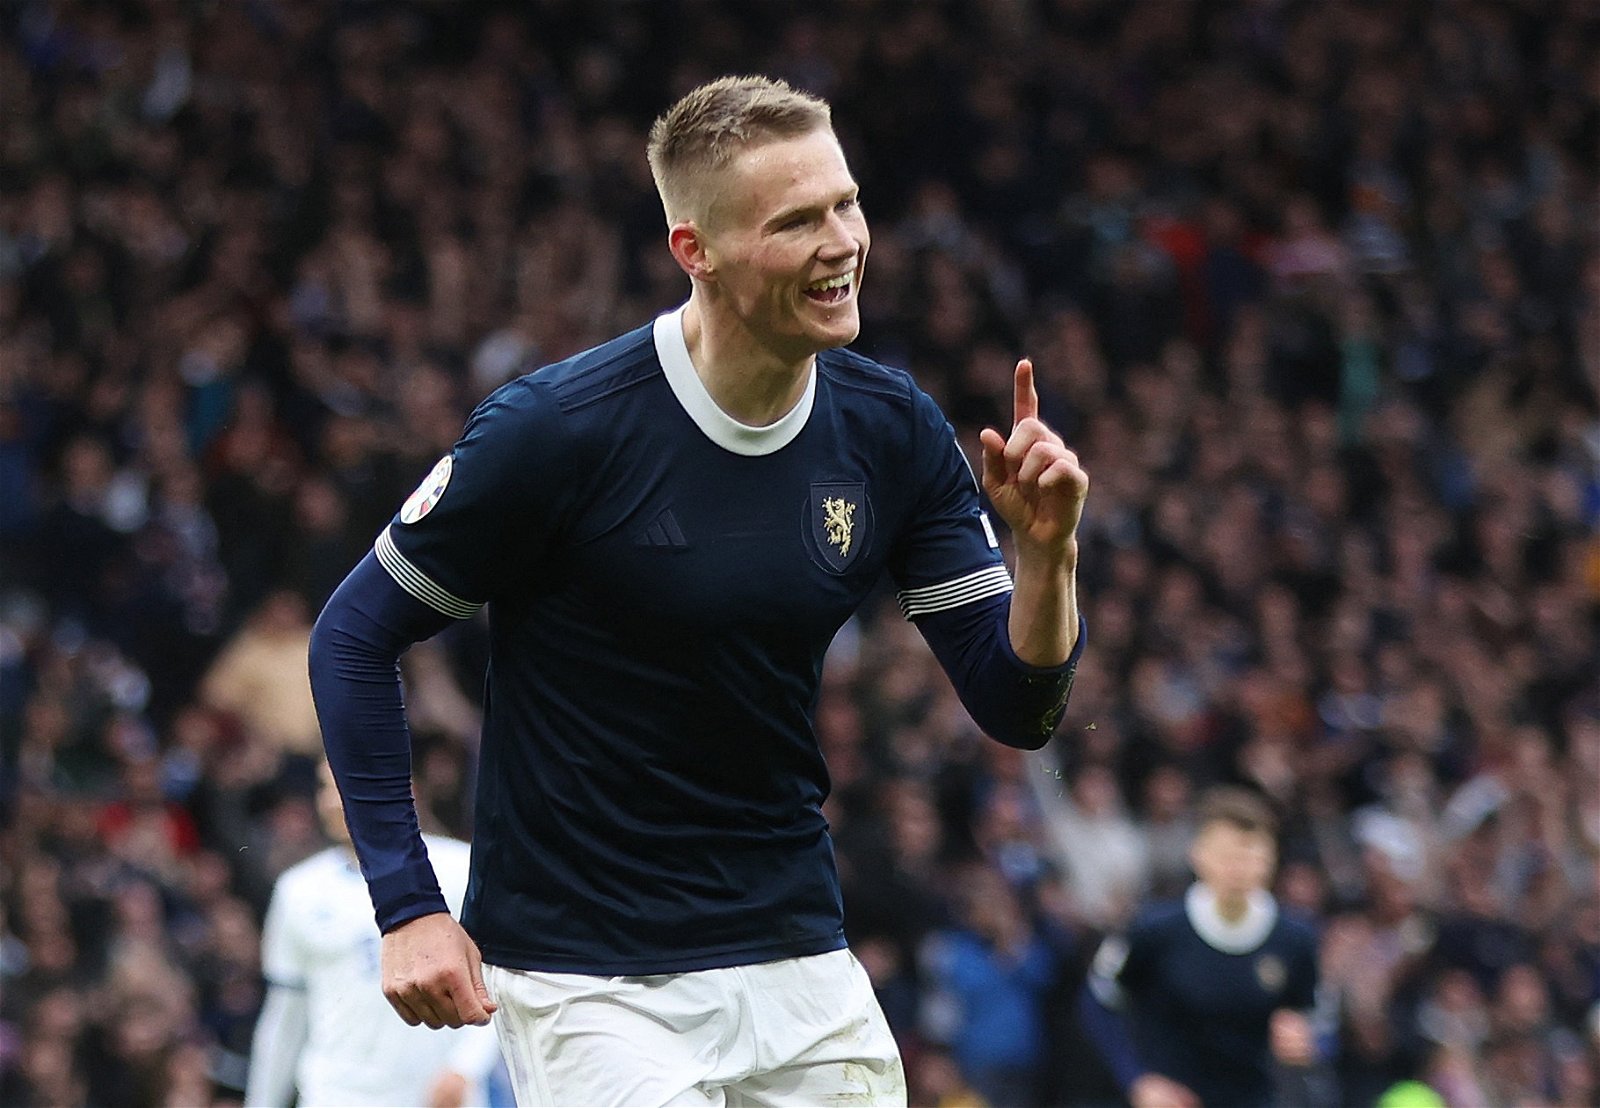 Scotland's Scott McTominay celebrates scoring their second goal